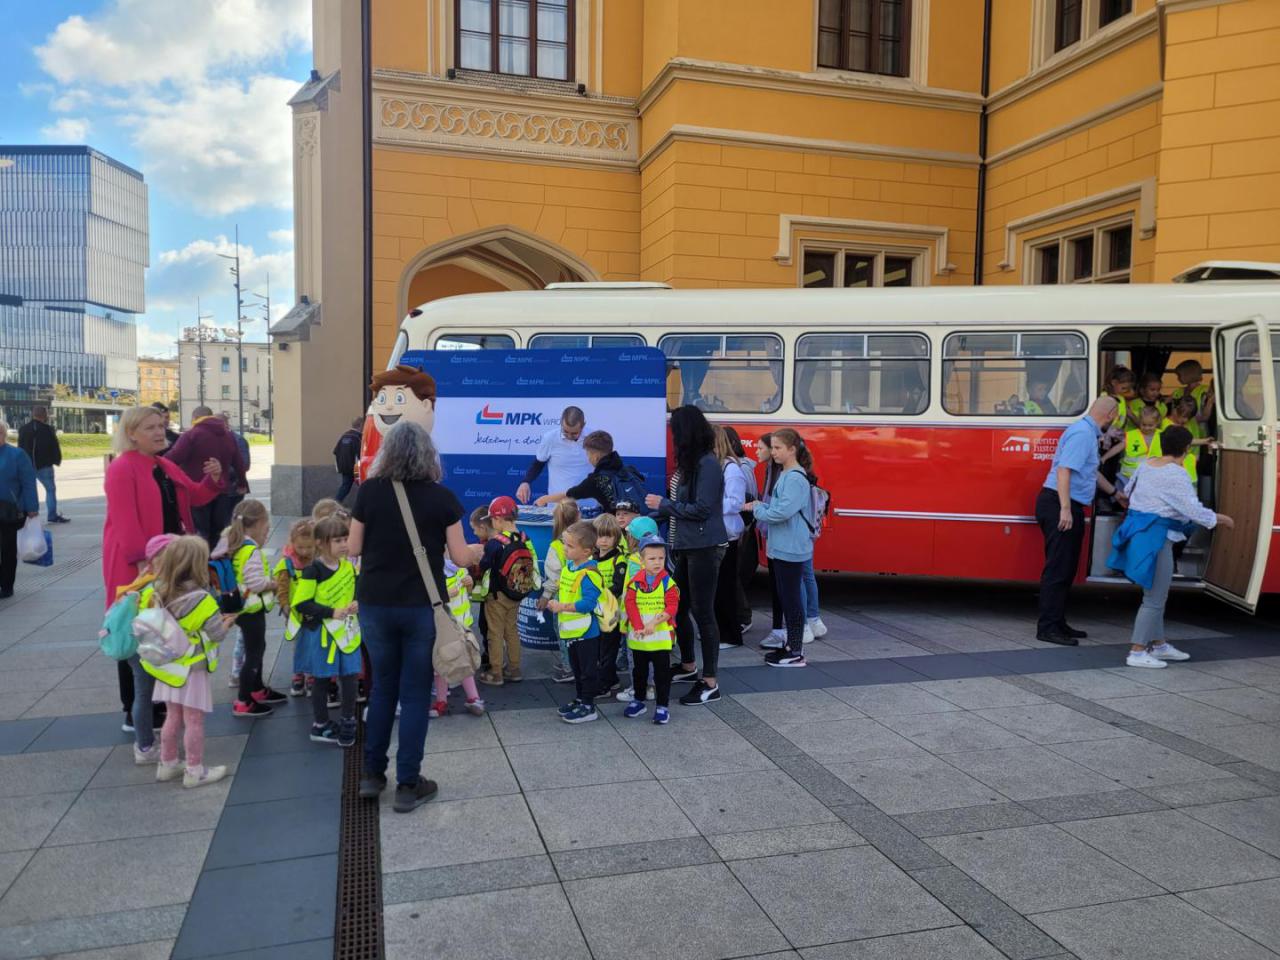 Bezpieczna droga do szkoły. MPK Wrocław i policja edukowali dzieci w zakresie podróżowania komunikacją miejską [Foto]